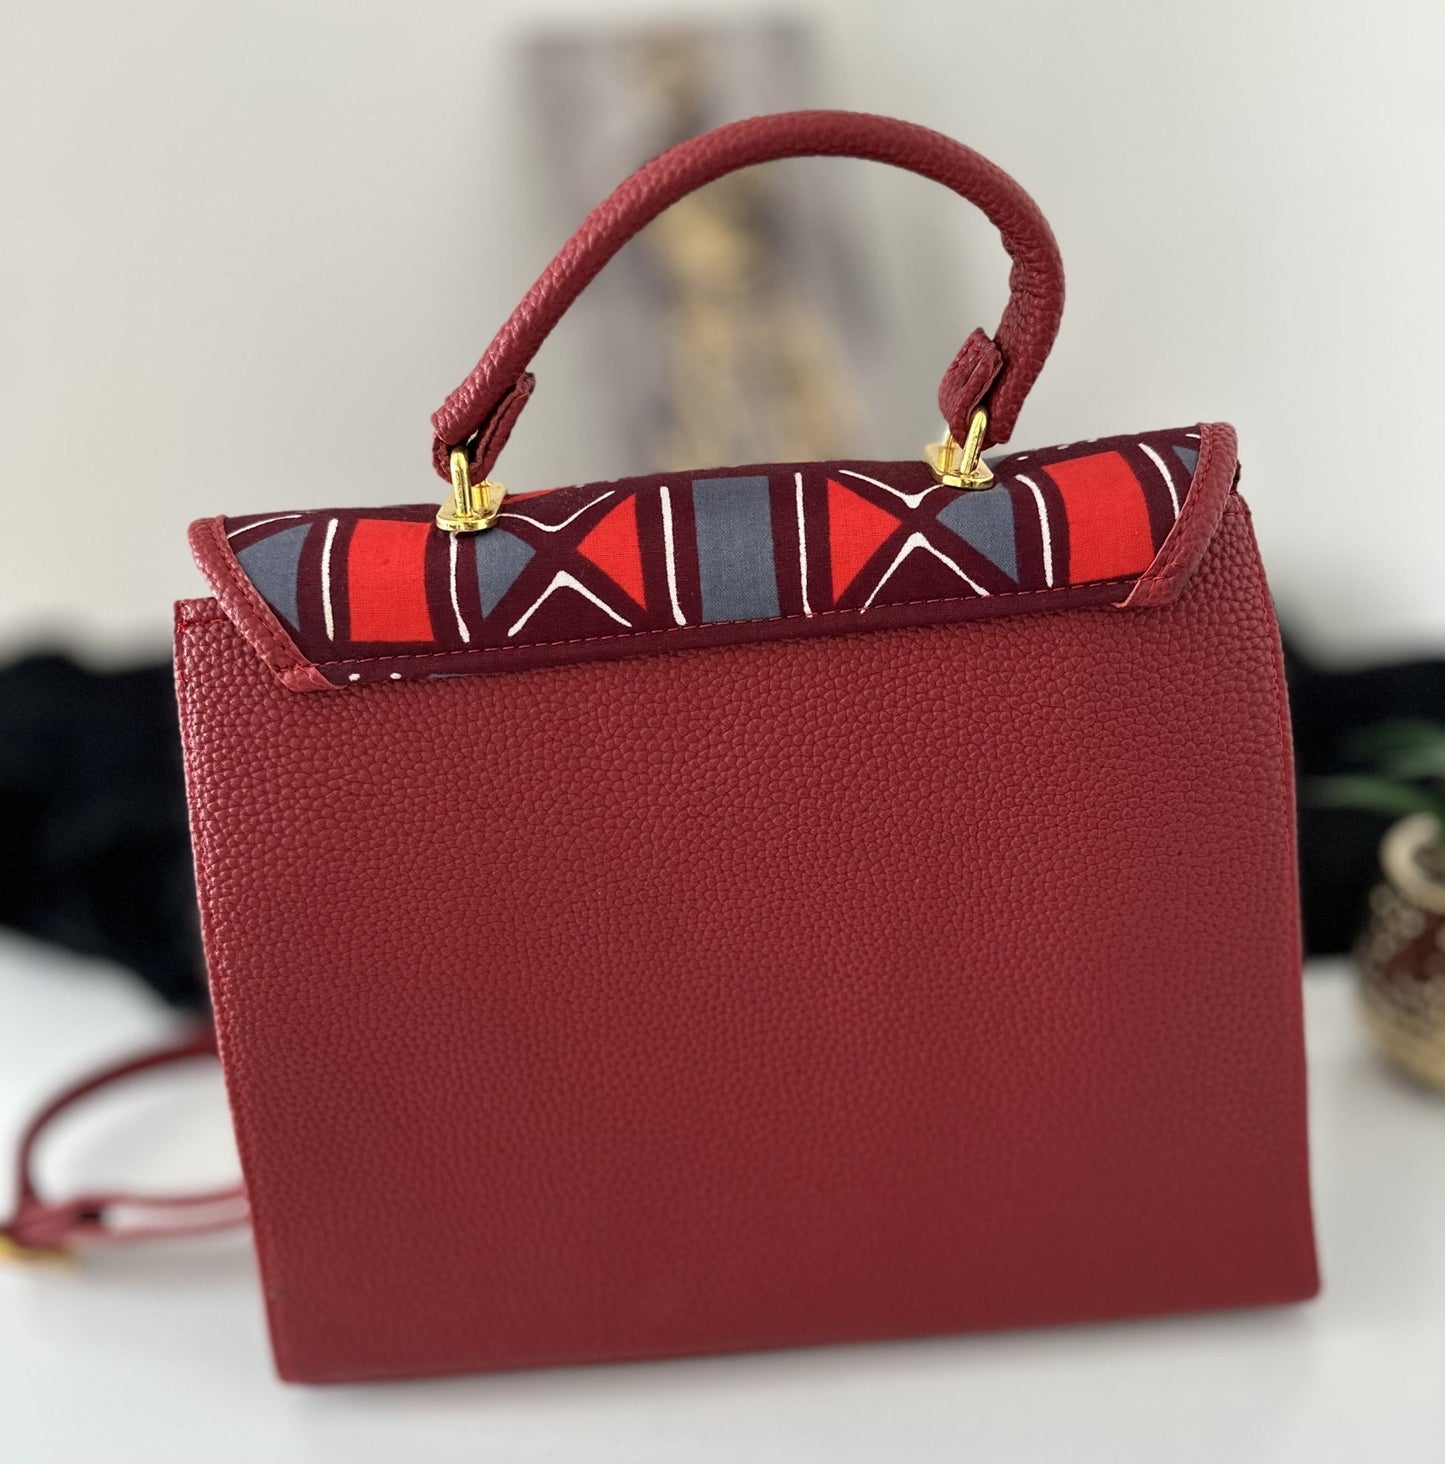 Alexia Ankara handbag/ luxury handbag/ sac à main Africain de luxe - Nguet’s Design